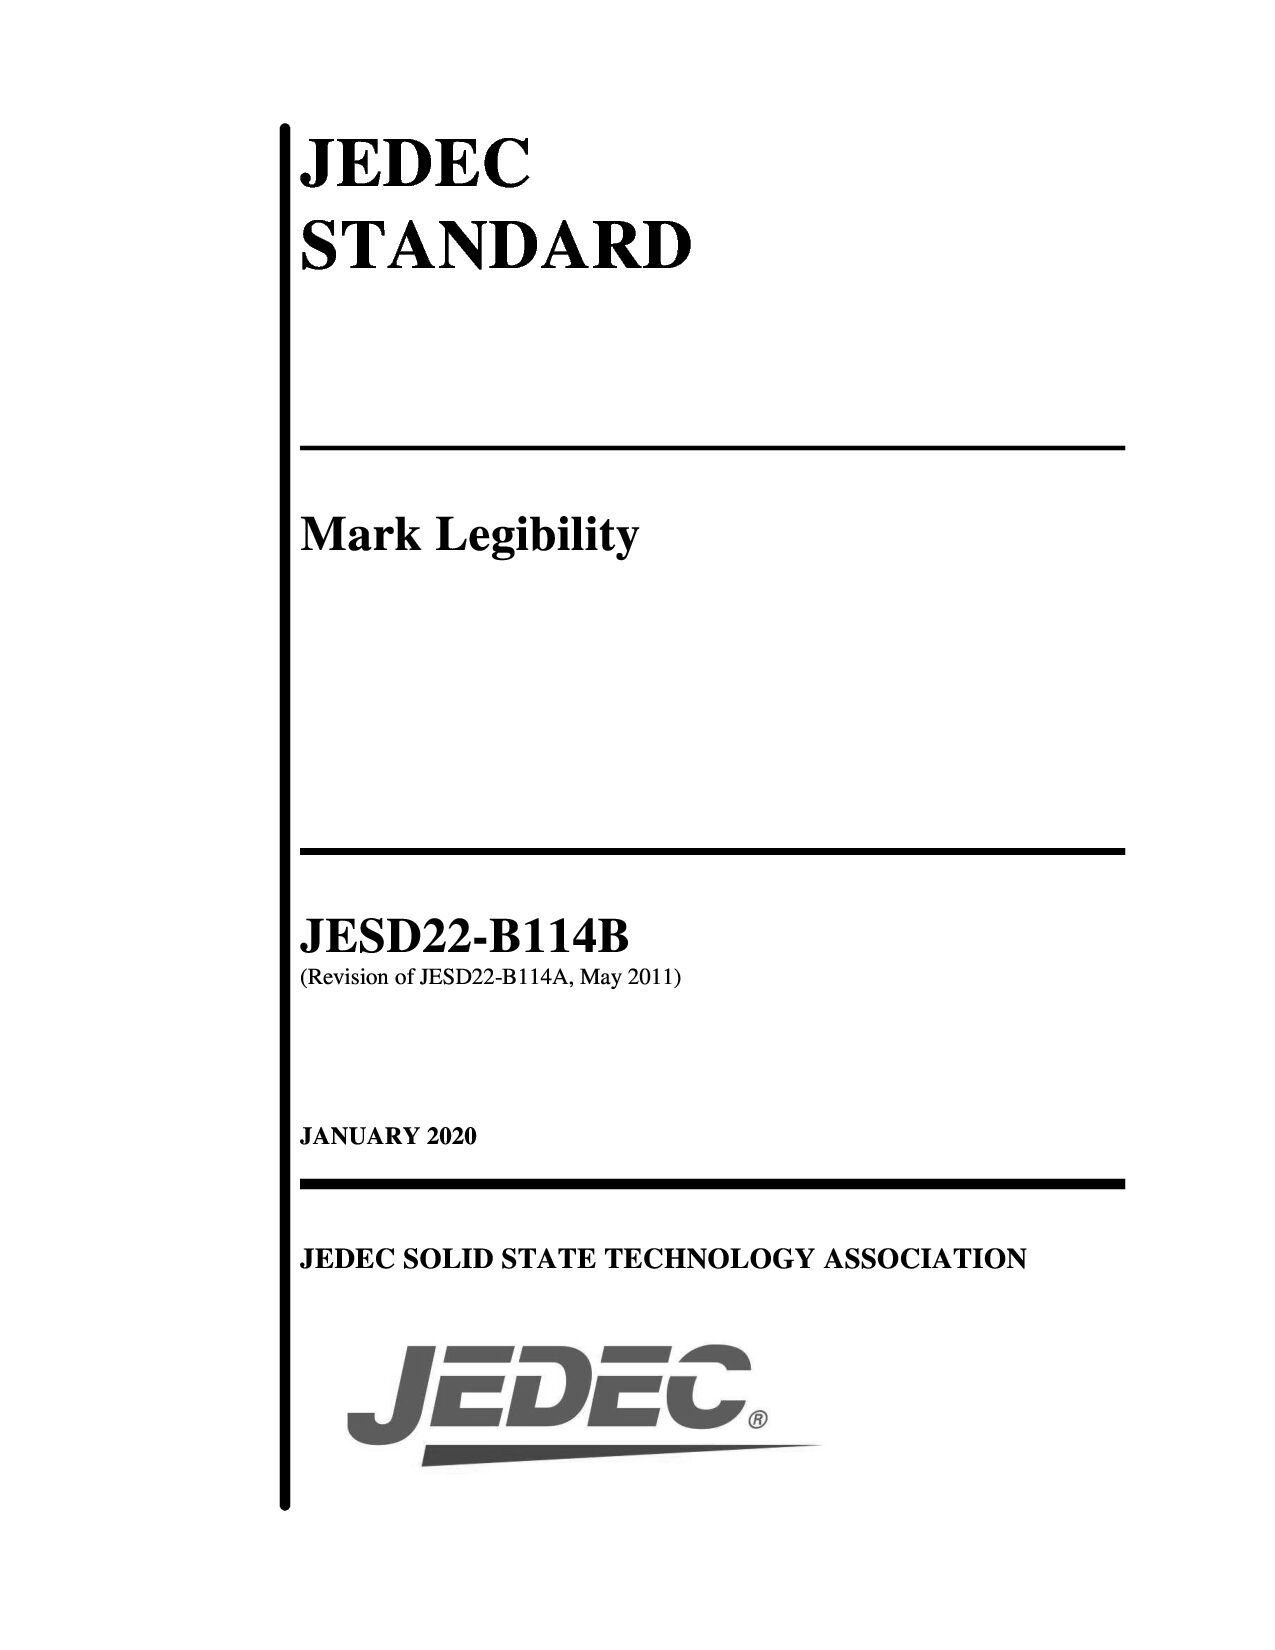 JEDEC JESD22-B114B-2020